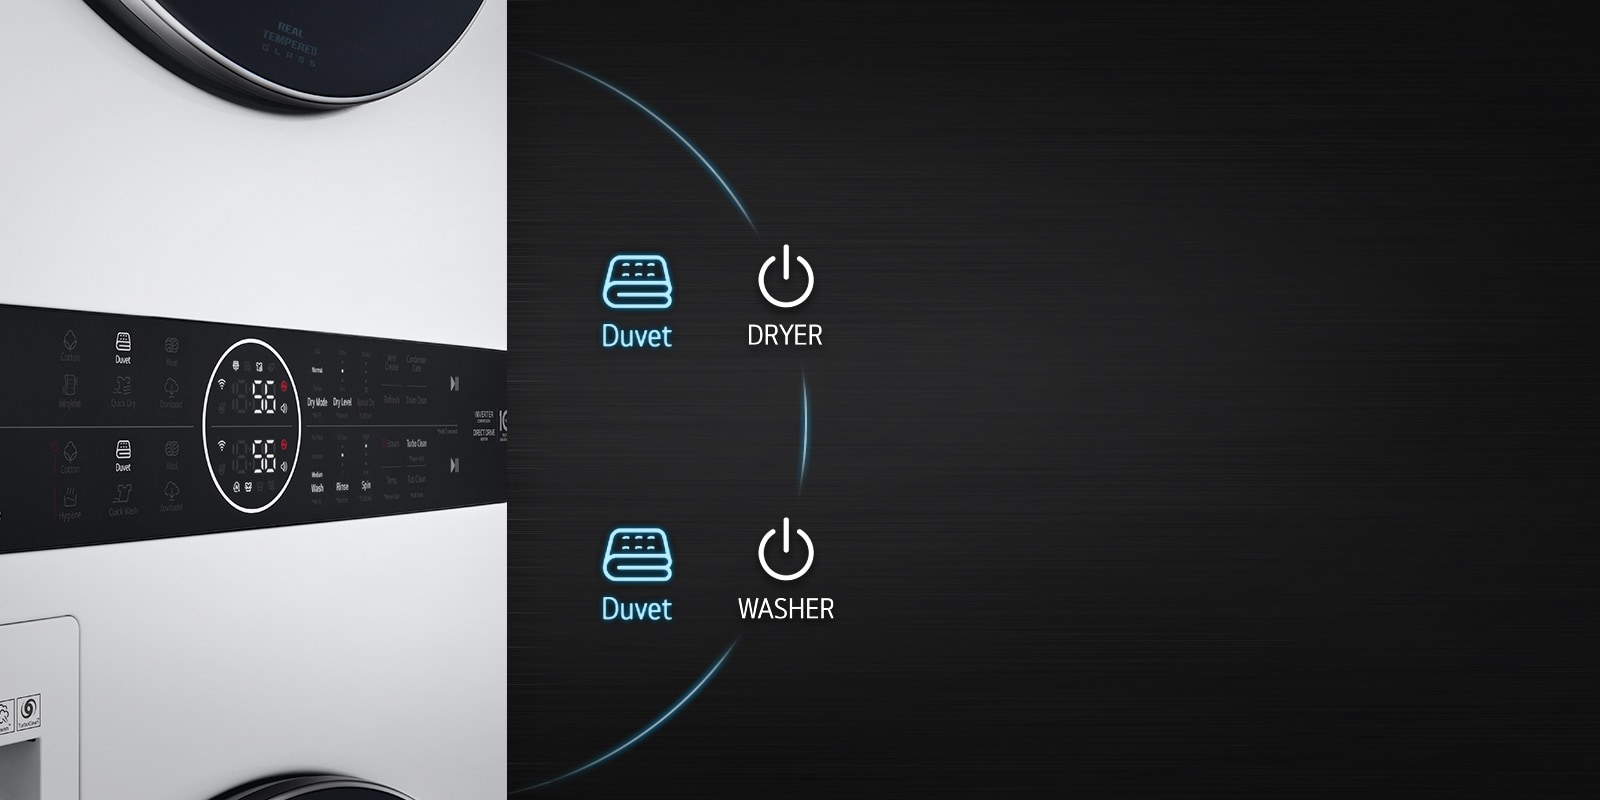 Đây là hình ảnh của bảng điều khiển sản phẩm. Nút Chăn của Máy sấy và Nút Chăn của Máy giặt được tô sáng.